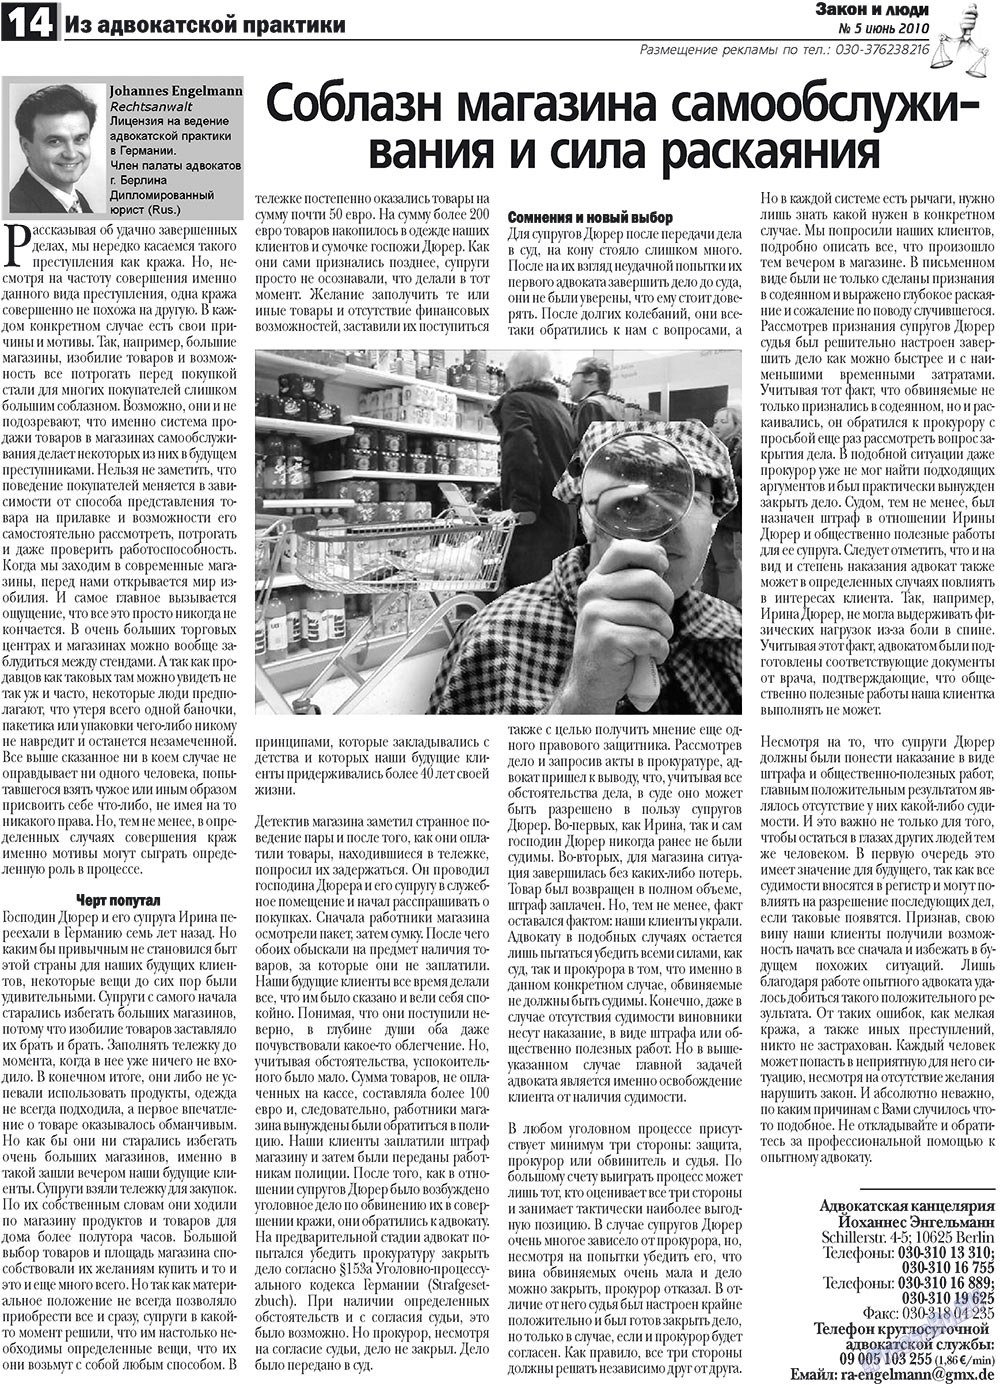 Закон и люди, газета. 2010 №5 стр.14